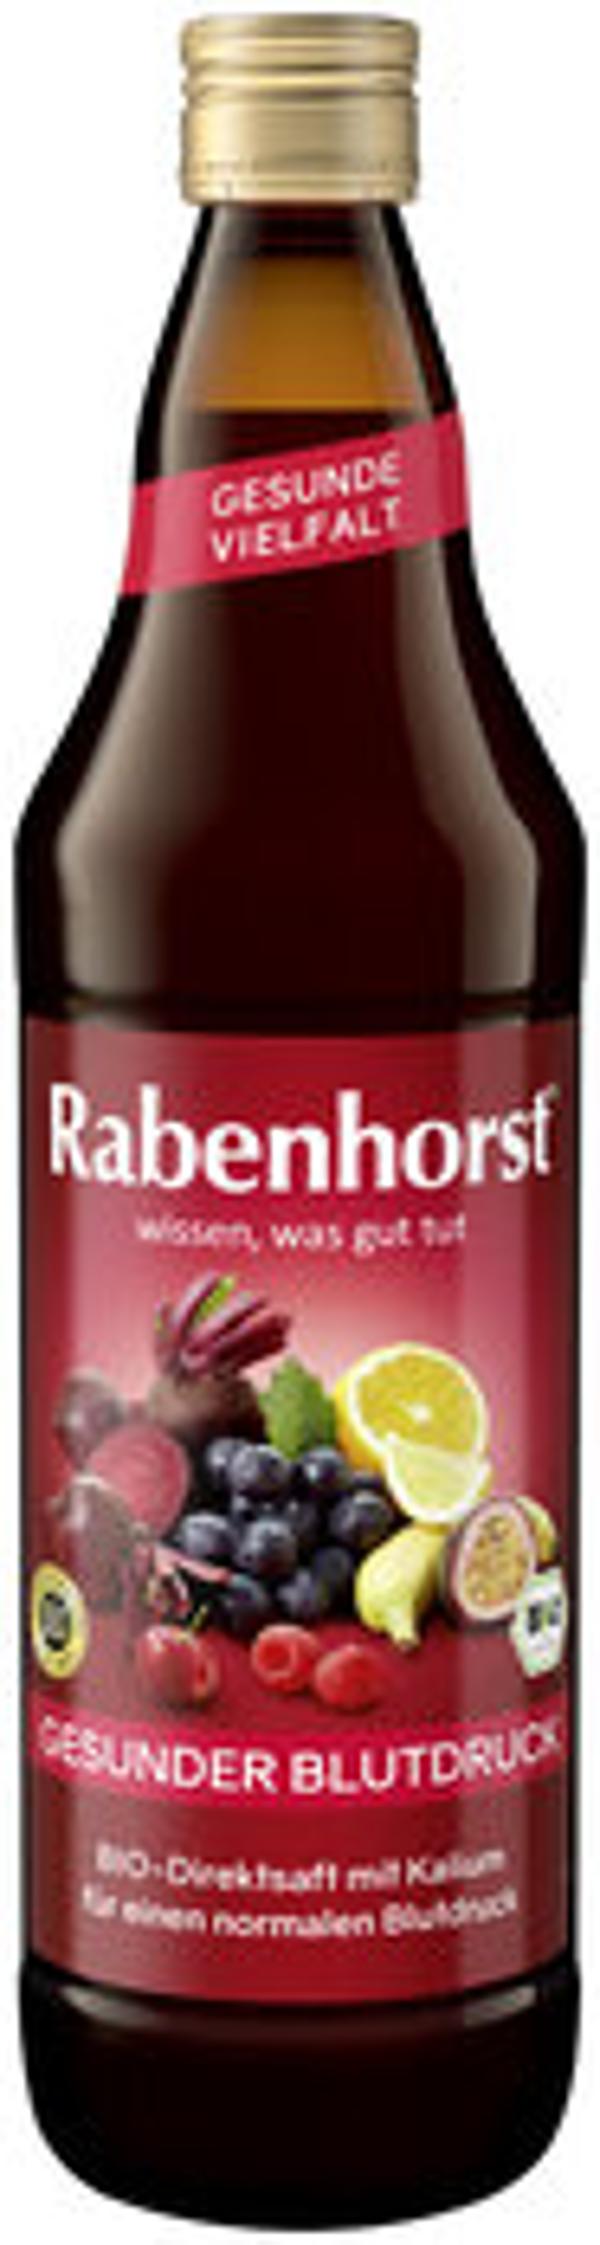 Produktfoto zu Rabenhorst Gesunder Blutdruck 0,75l